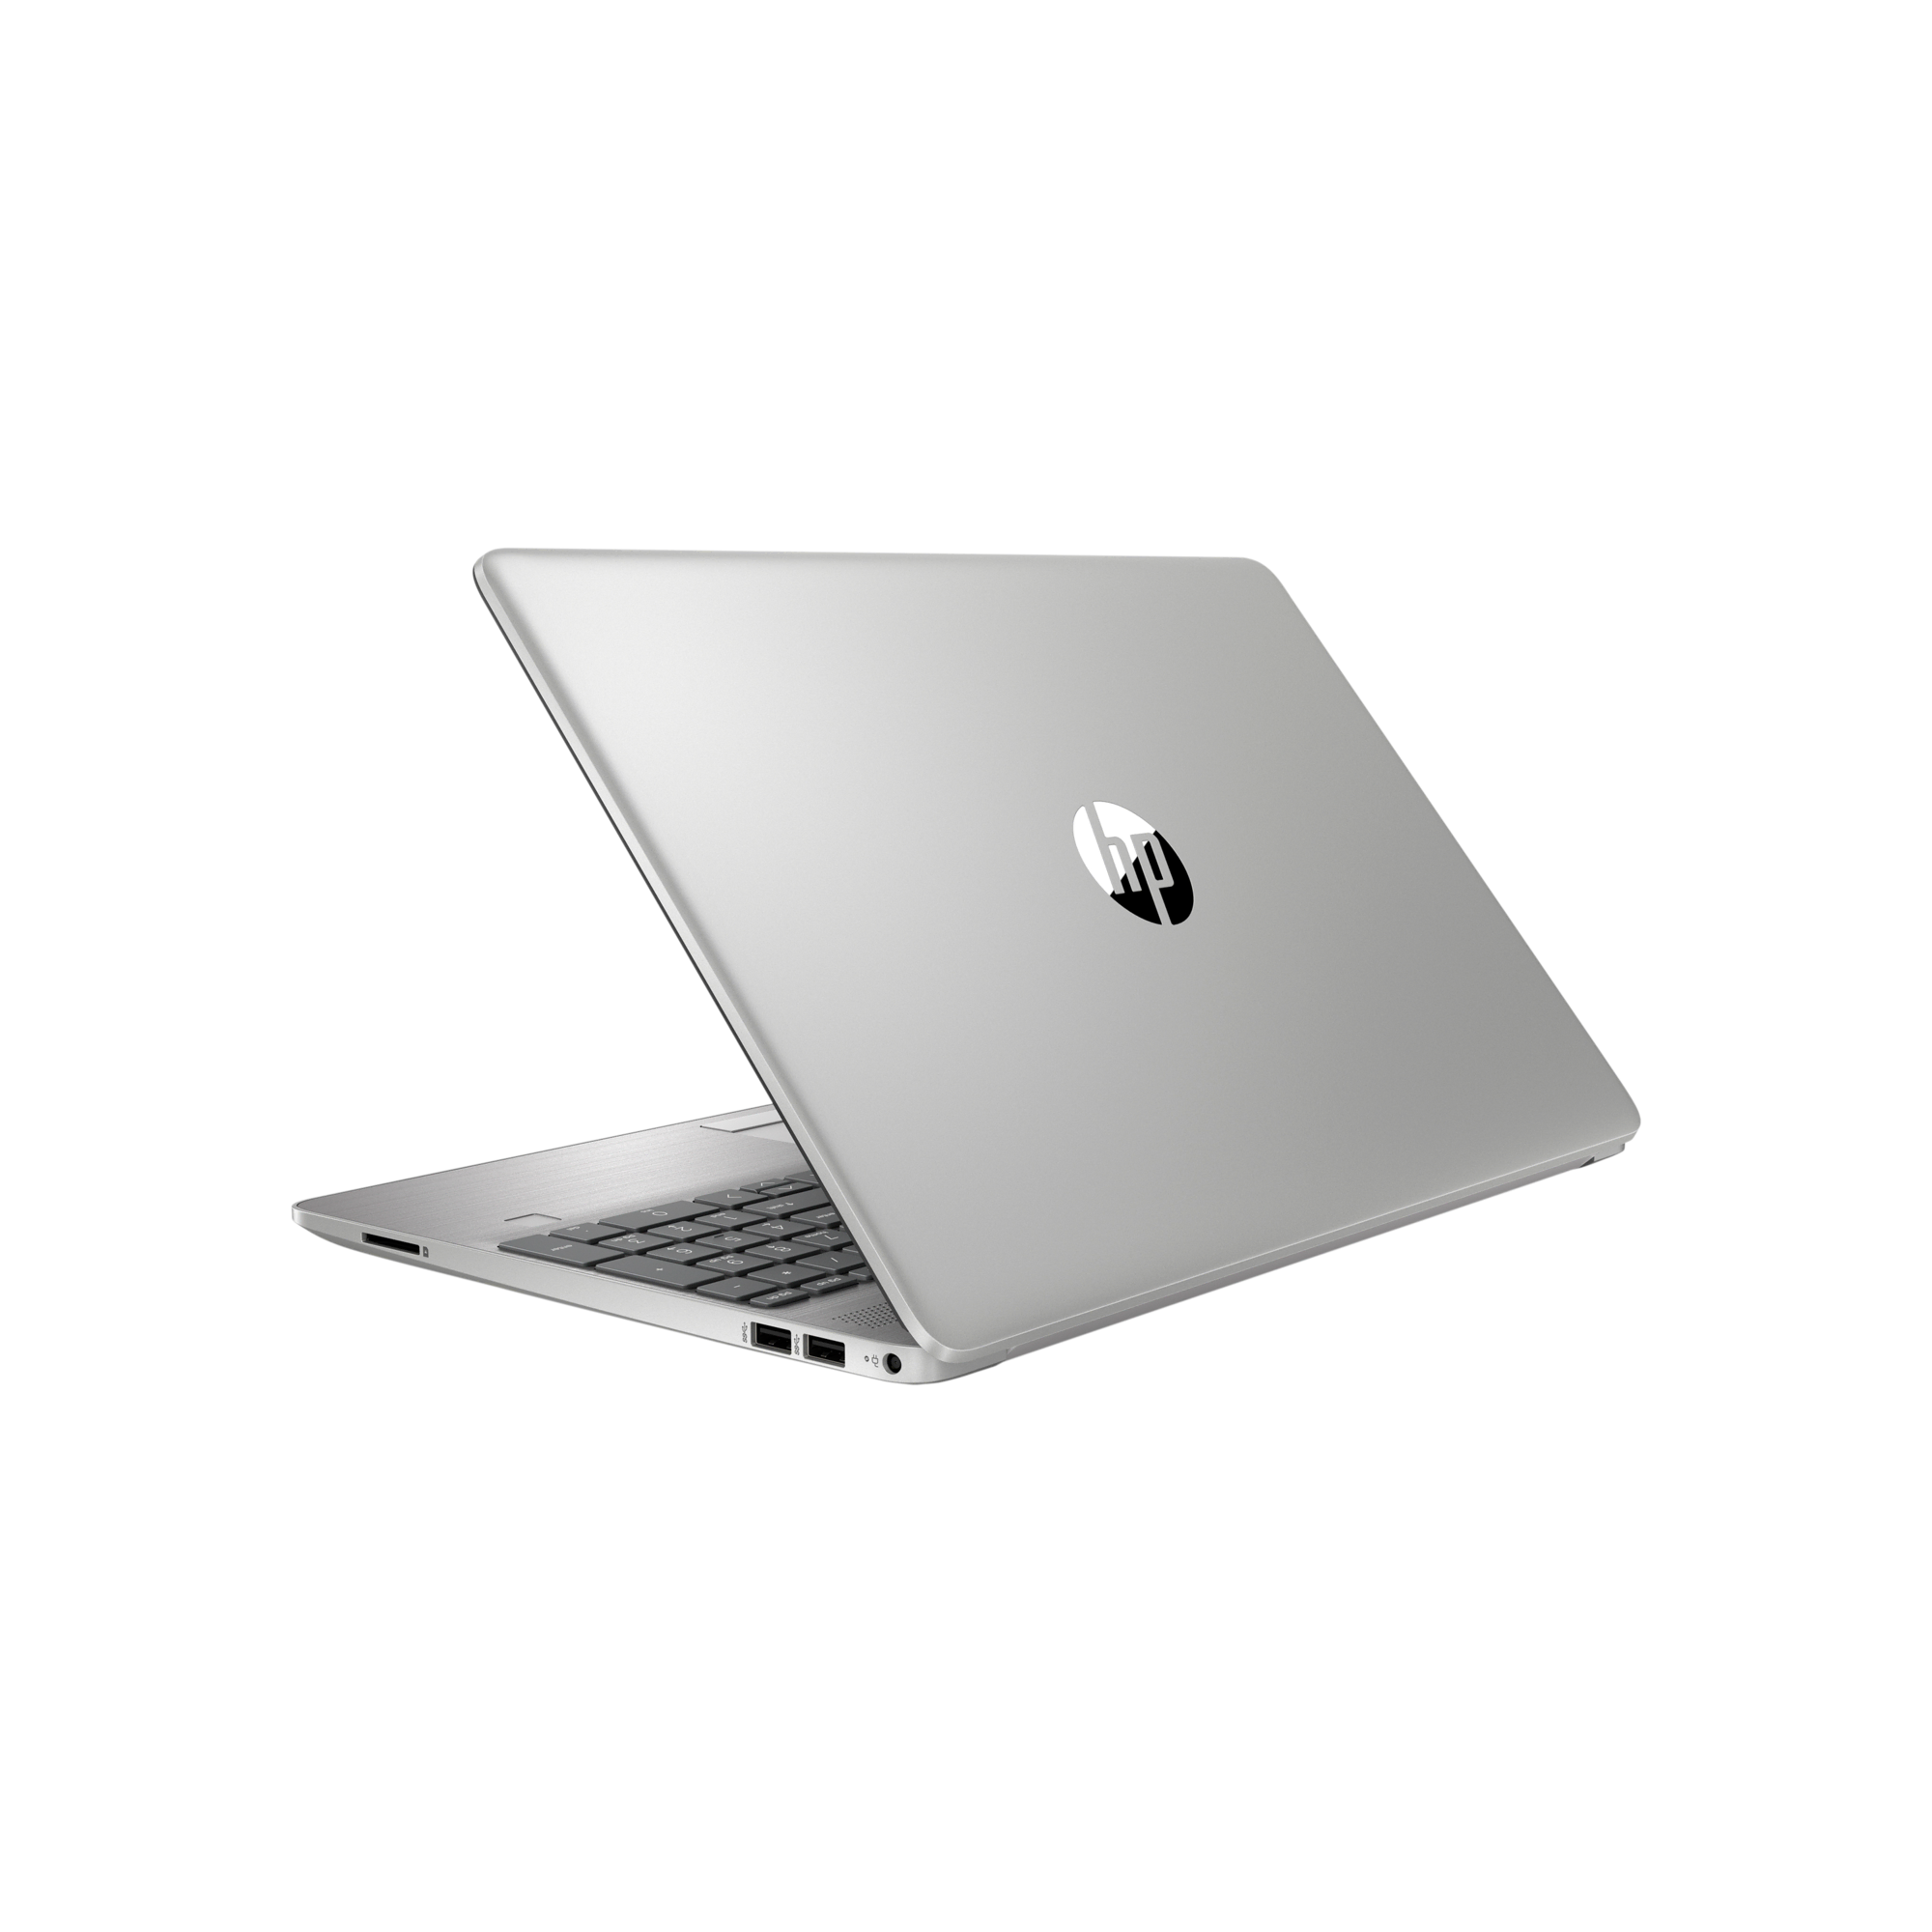 HP i5 8-256GB - 854F4ES Laptop